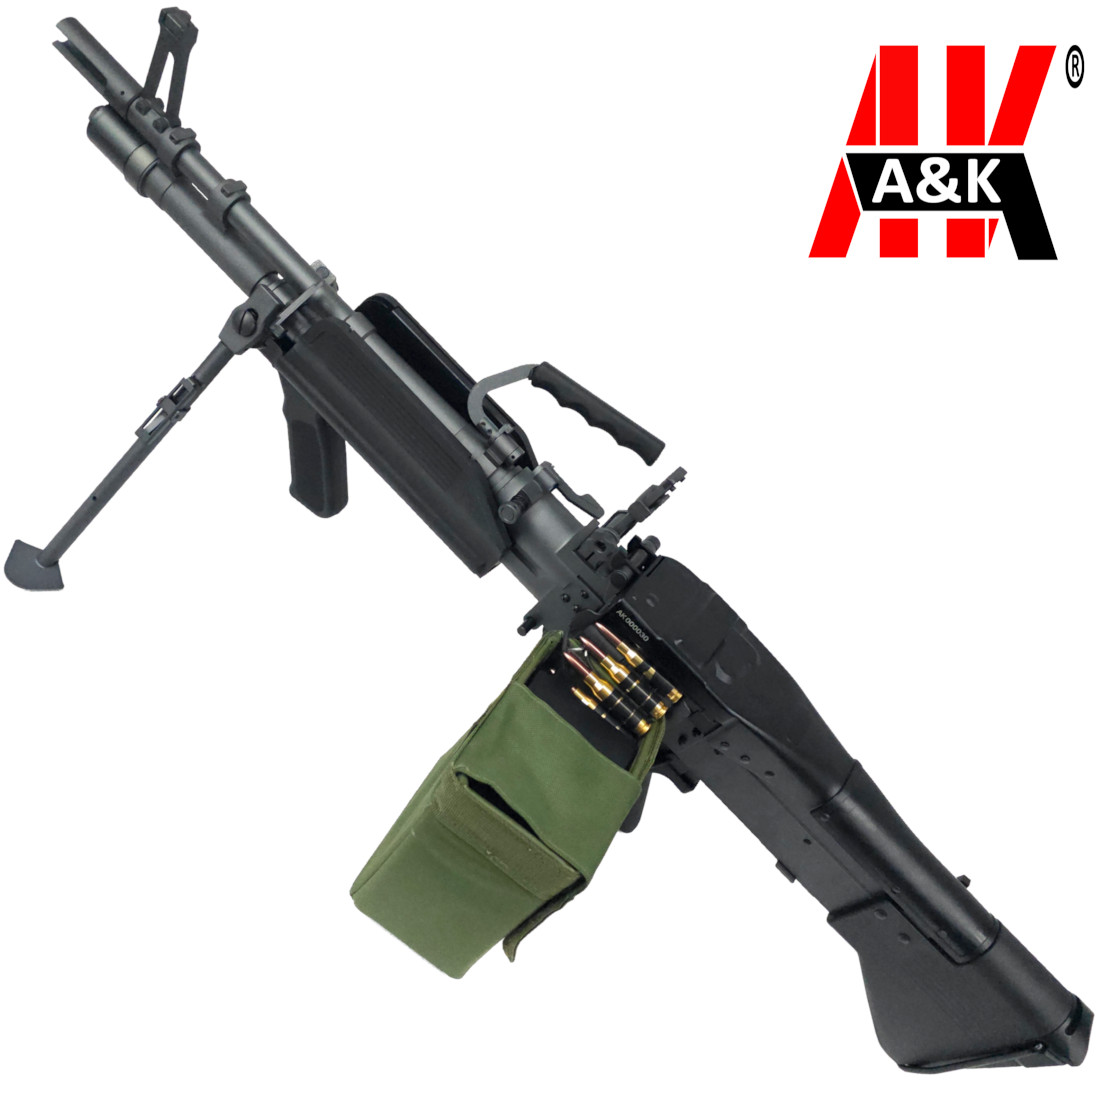 A&K M60E4/MK43 AEG Gel Blaster LMG Machine Gun